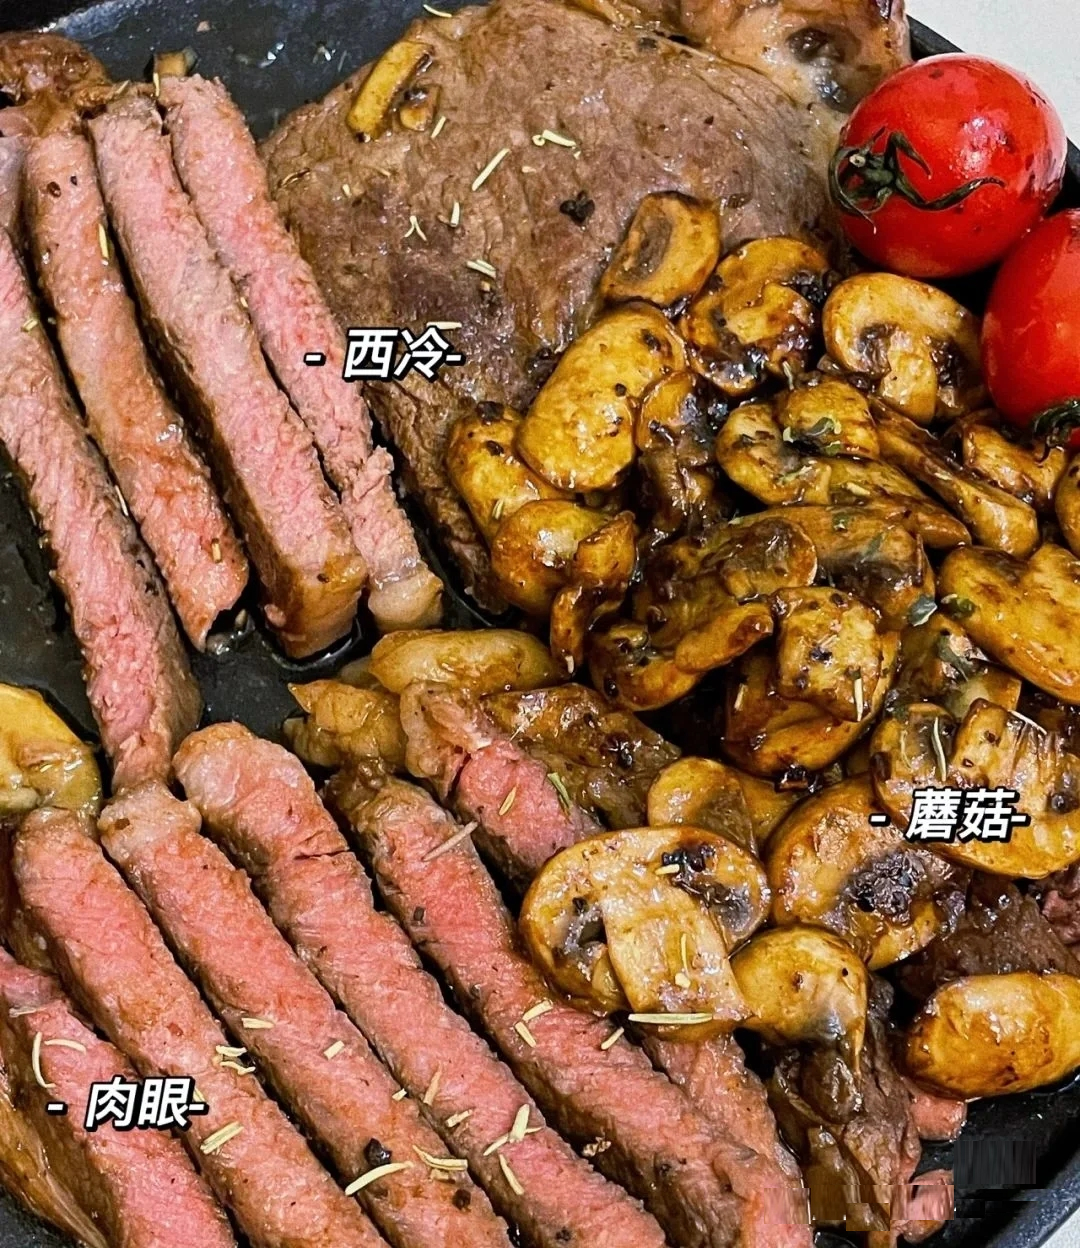 牛肉不同部位区别，美食口感自然不同